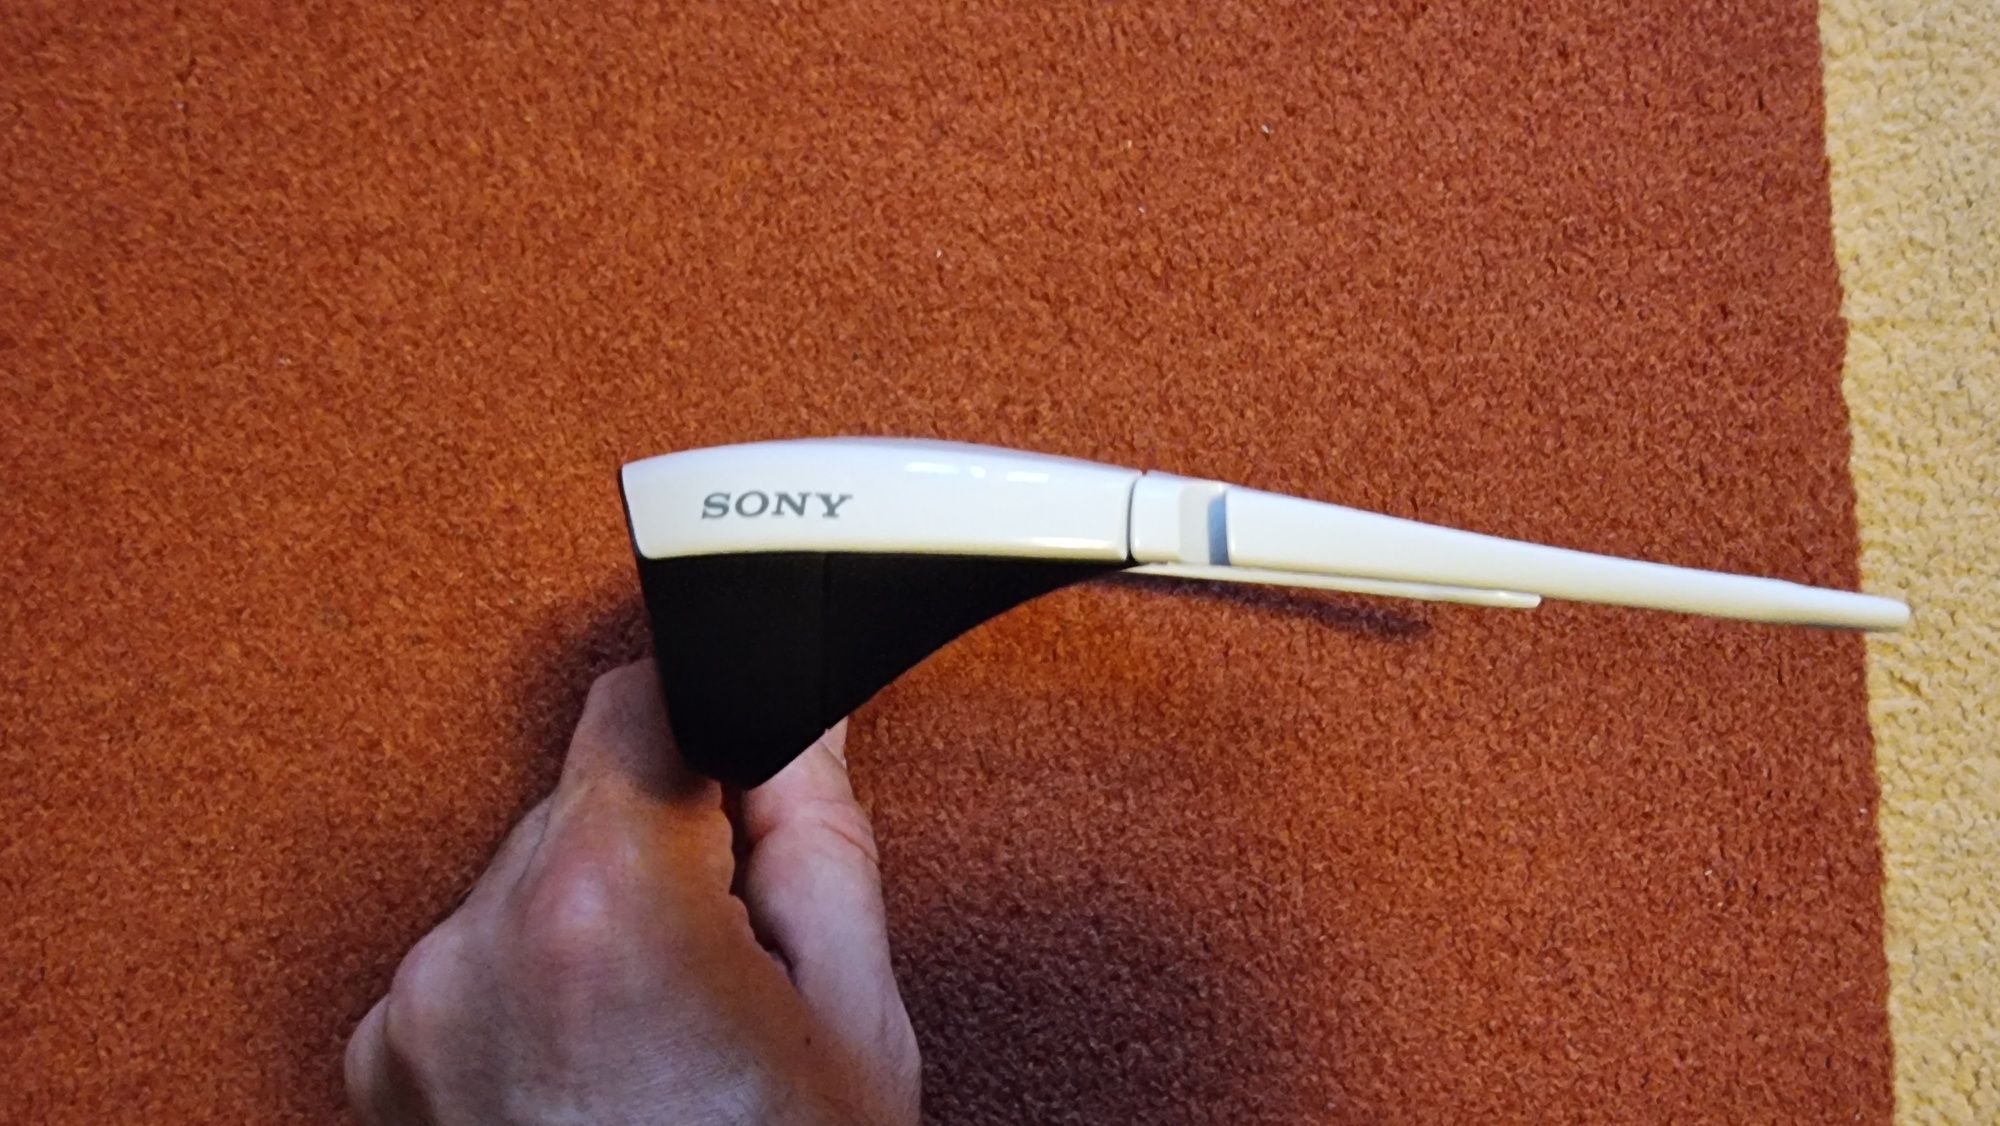 Ochelari 3D Sony pentru vizionare filme tv.. Noi nouti! 3 bucati